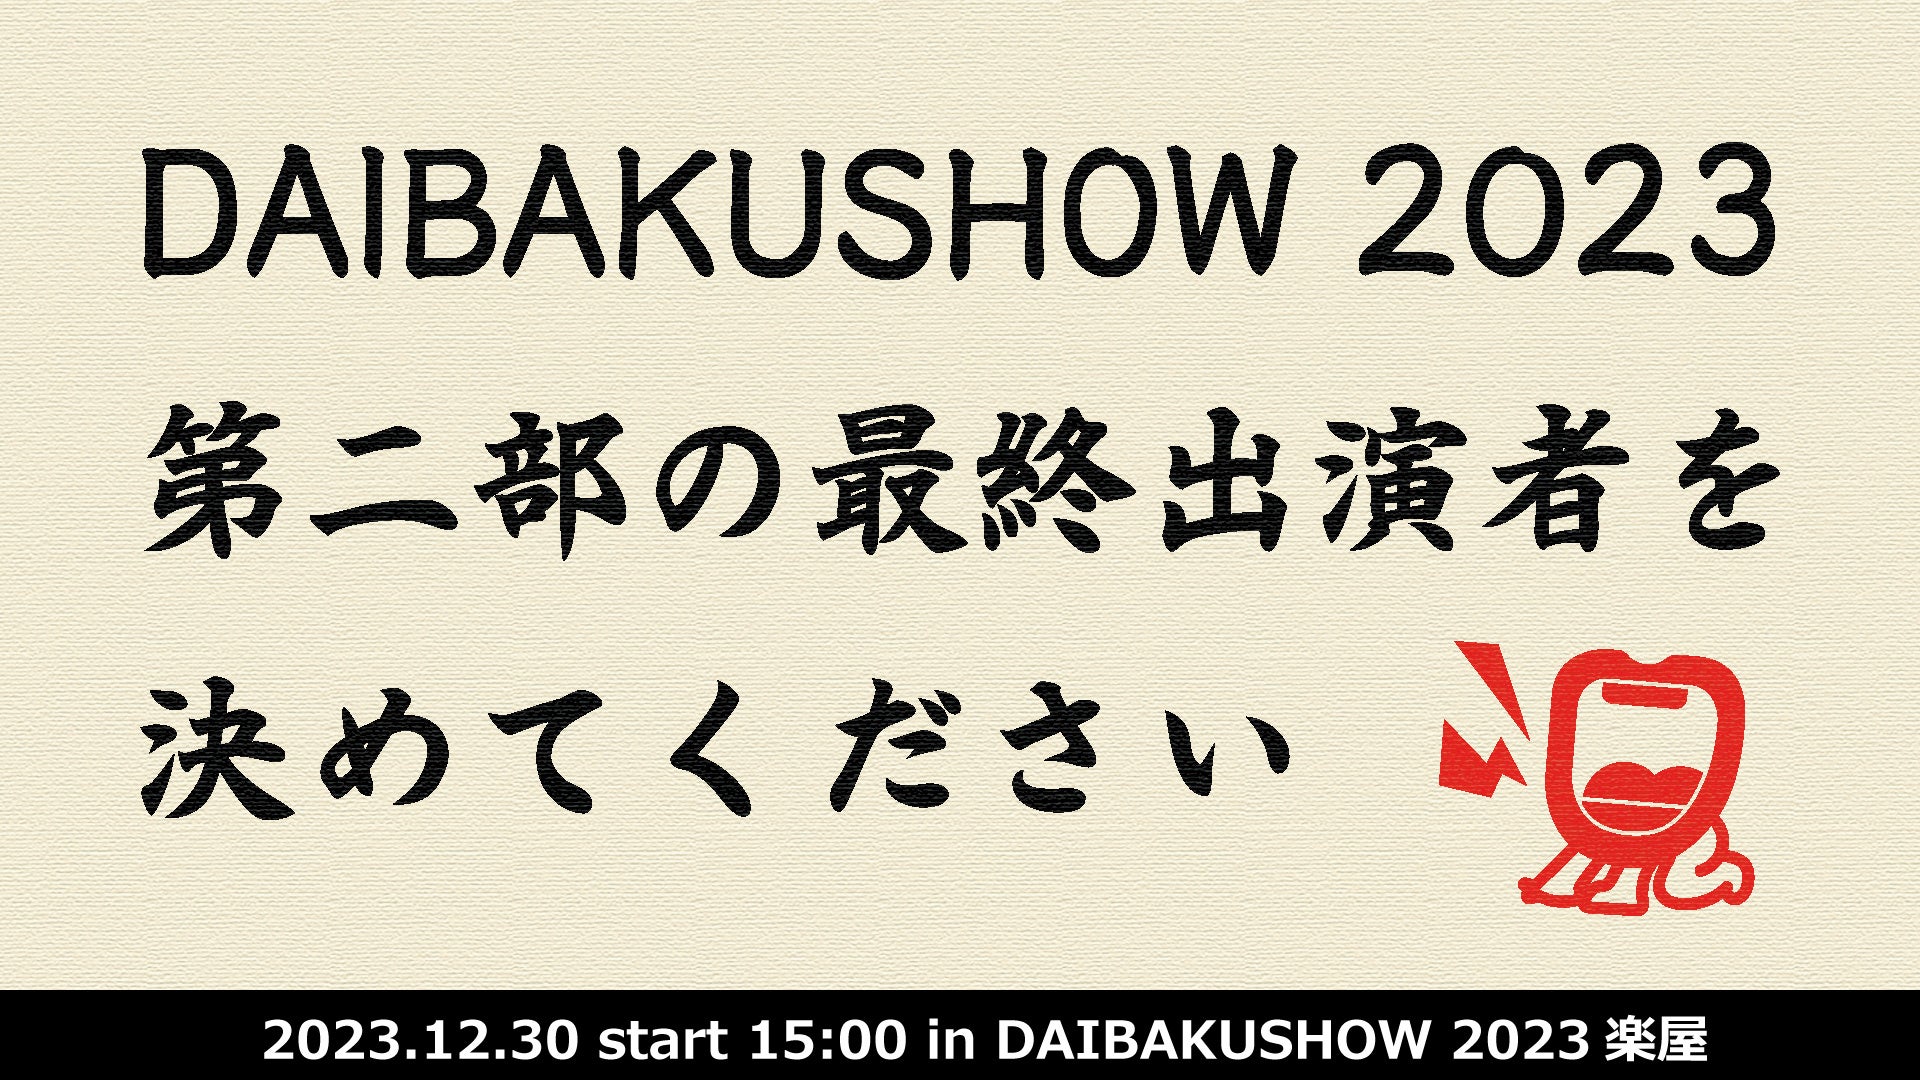 幕間ショー、オフィシャルグッズ追加、クラファン発表！YOSHIMOTO presents 『DAIBAKUSHOW 2023』第二部ラスト一枠争奪戦、オンライン配信にて開催決定！